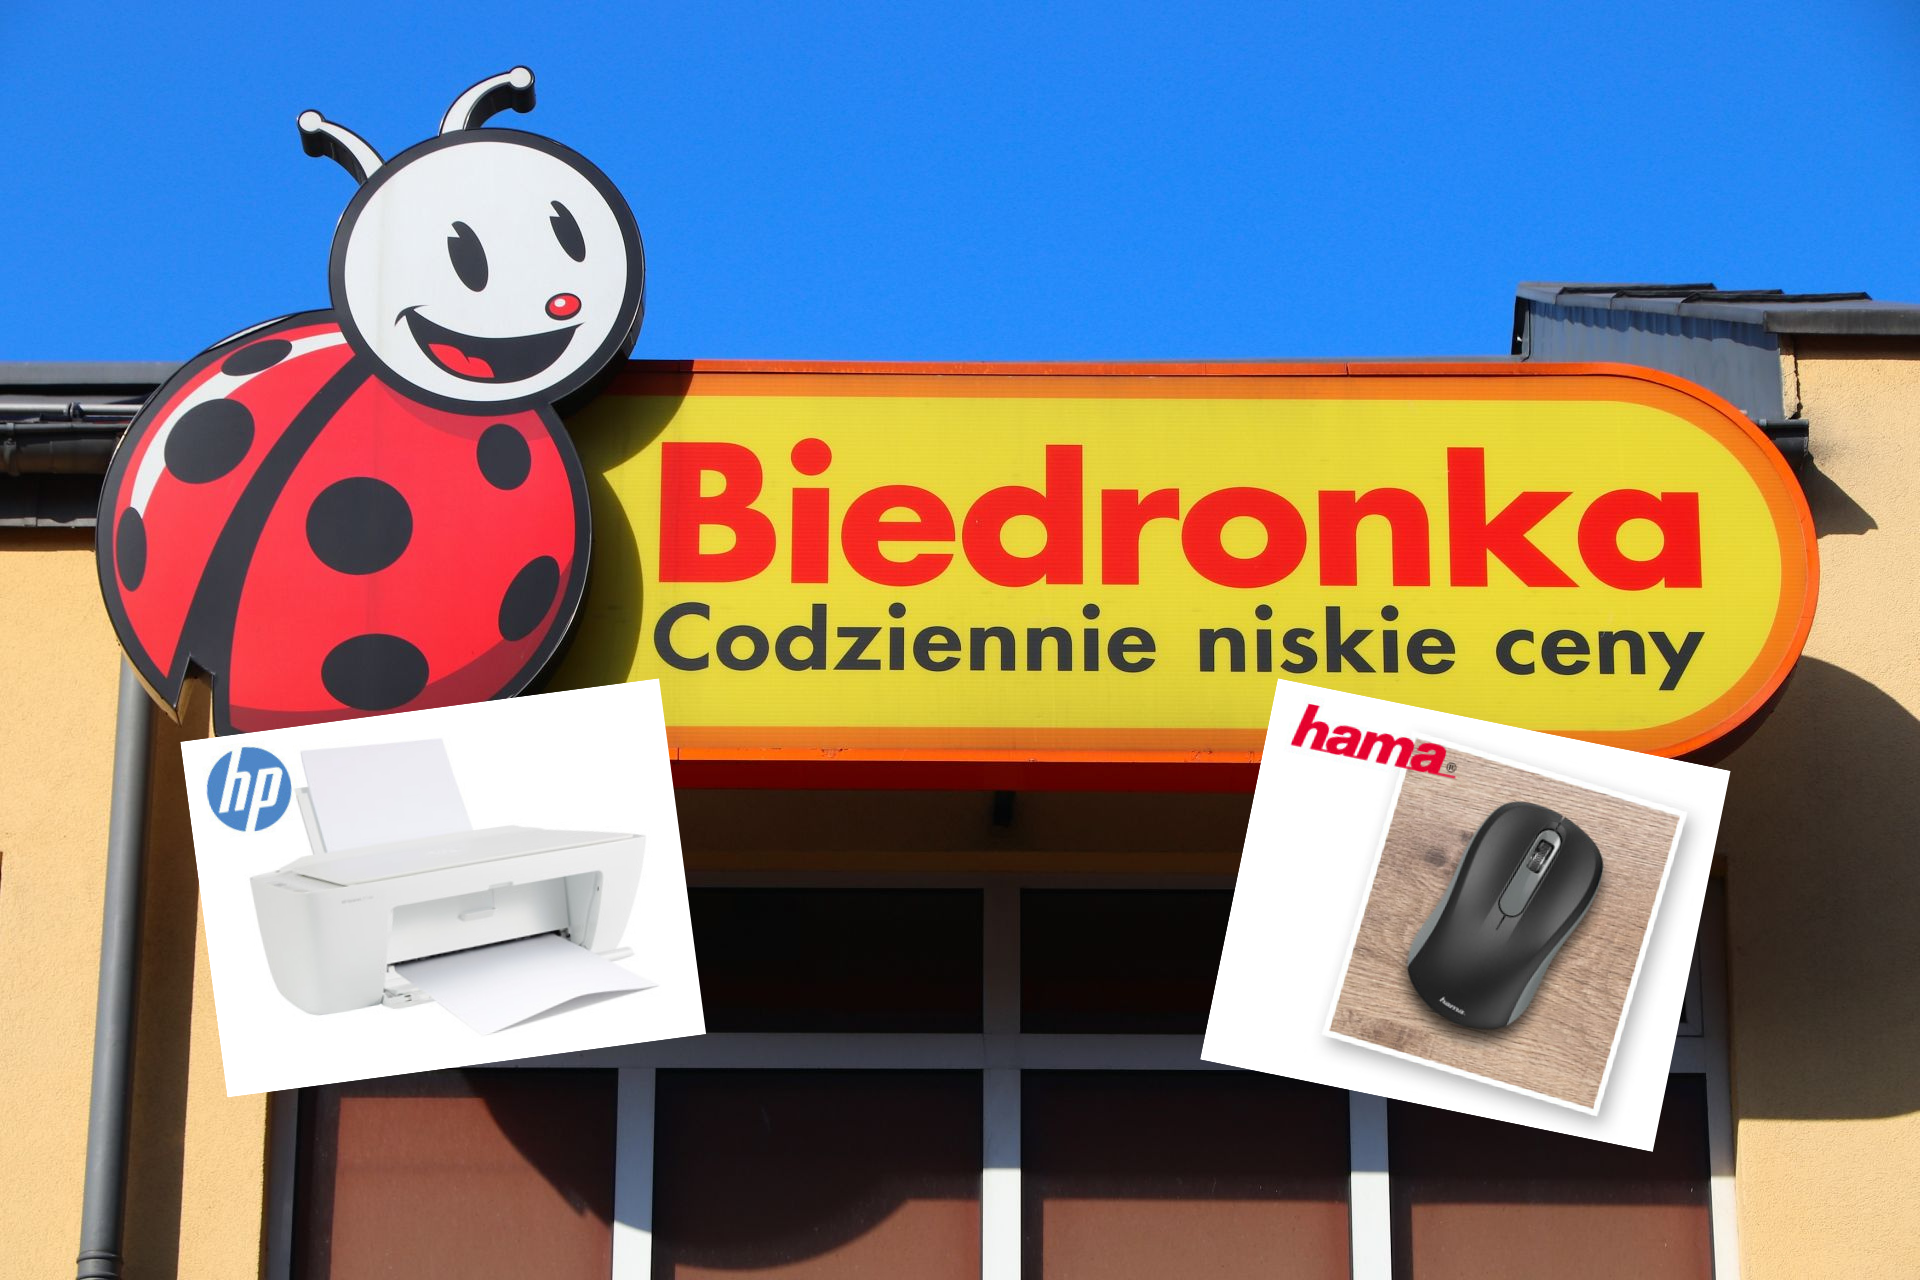 Nowa promocja na elektronikę w Biedronce - kupimy m.in. drukarkę, mysz  bezprzewodową i ładowarki